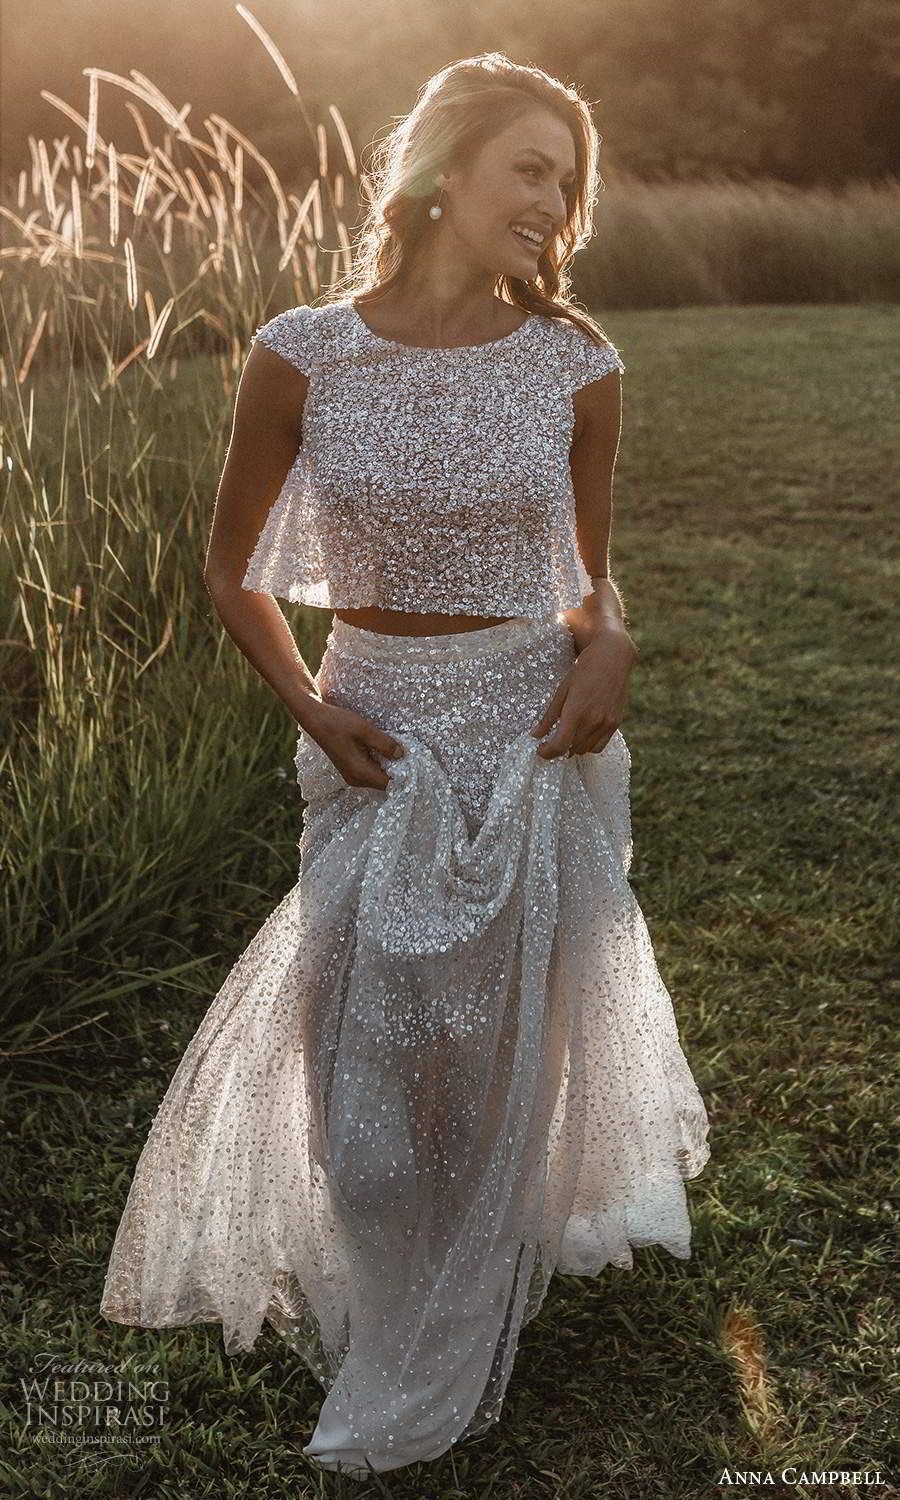 Anna Campbell “The Golden Hour” Wedding Dresses _ Wedding Inspirasi.jpg